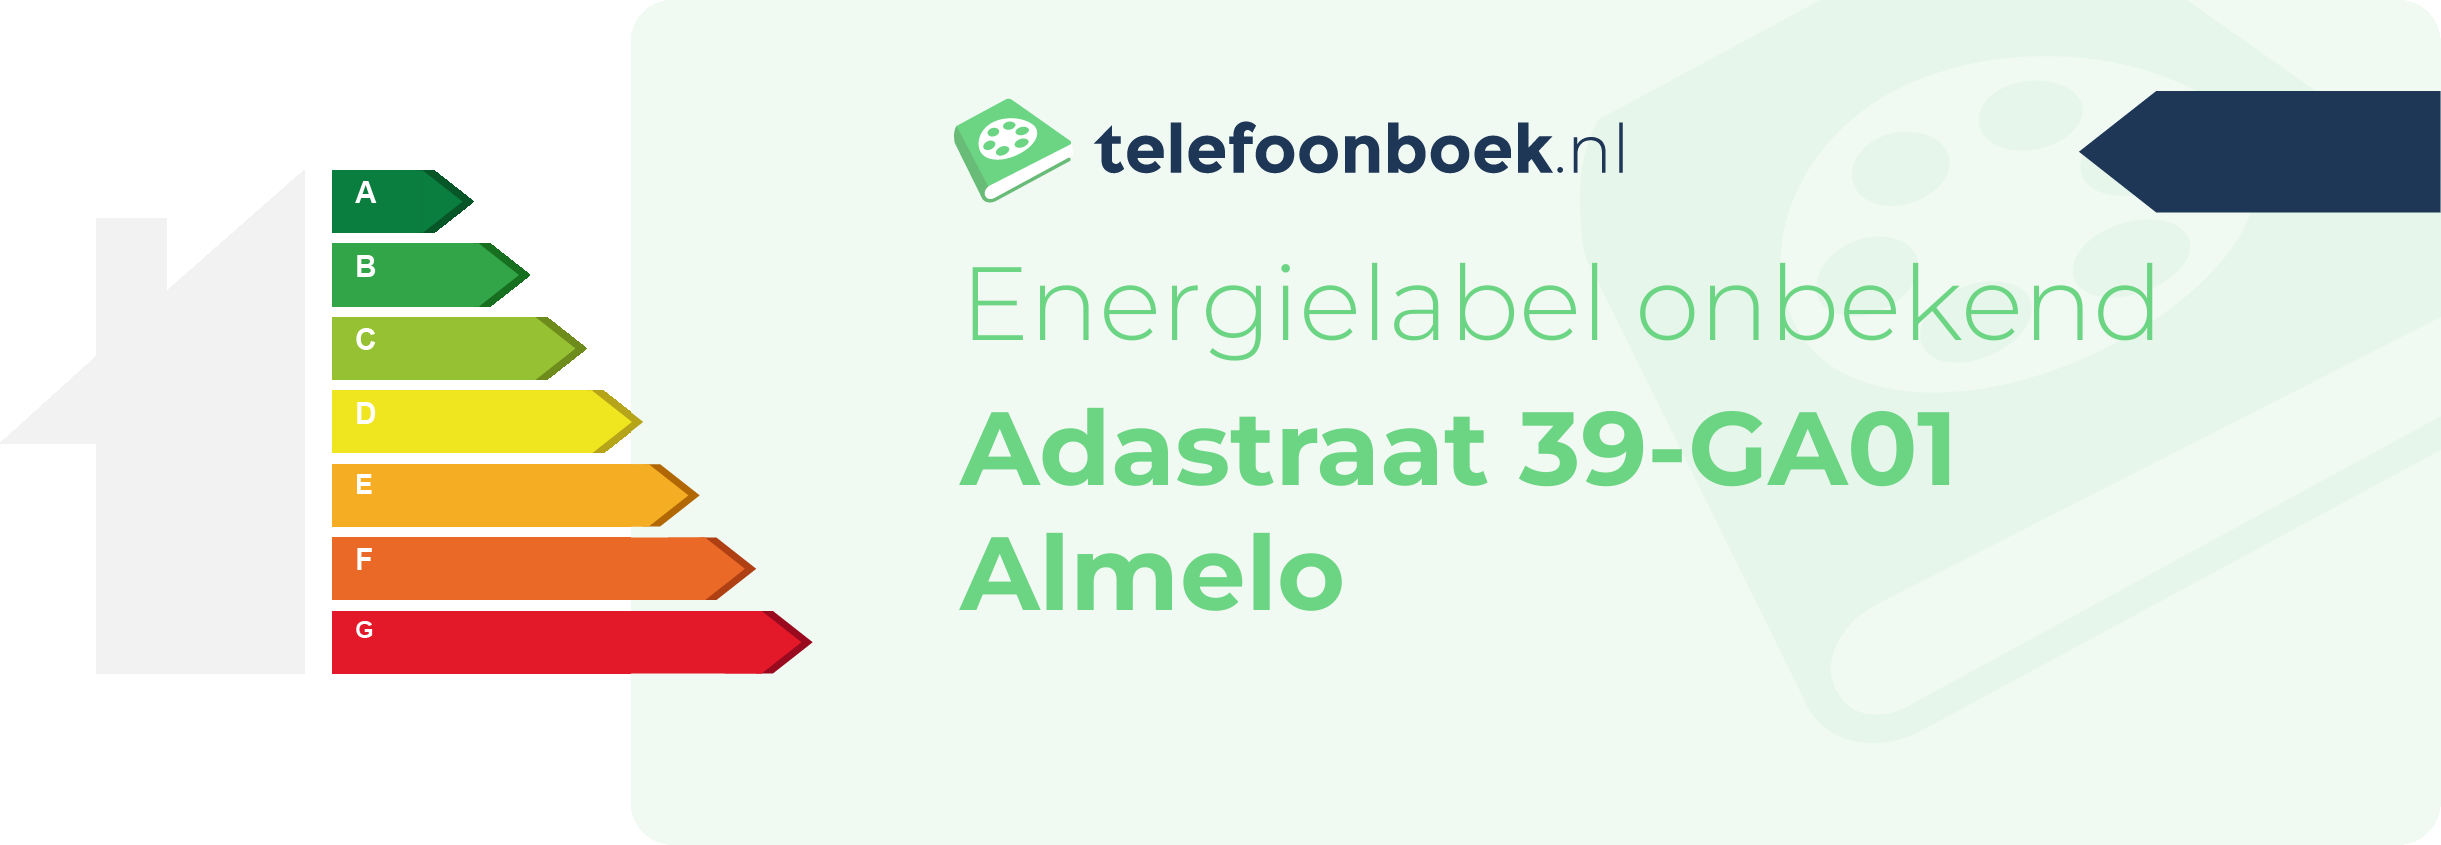 Energielabel Adastraat 39-GA01 Almelo